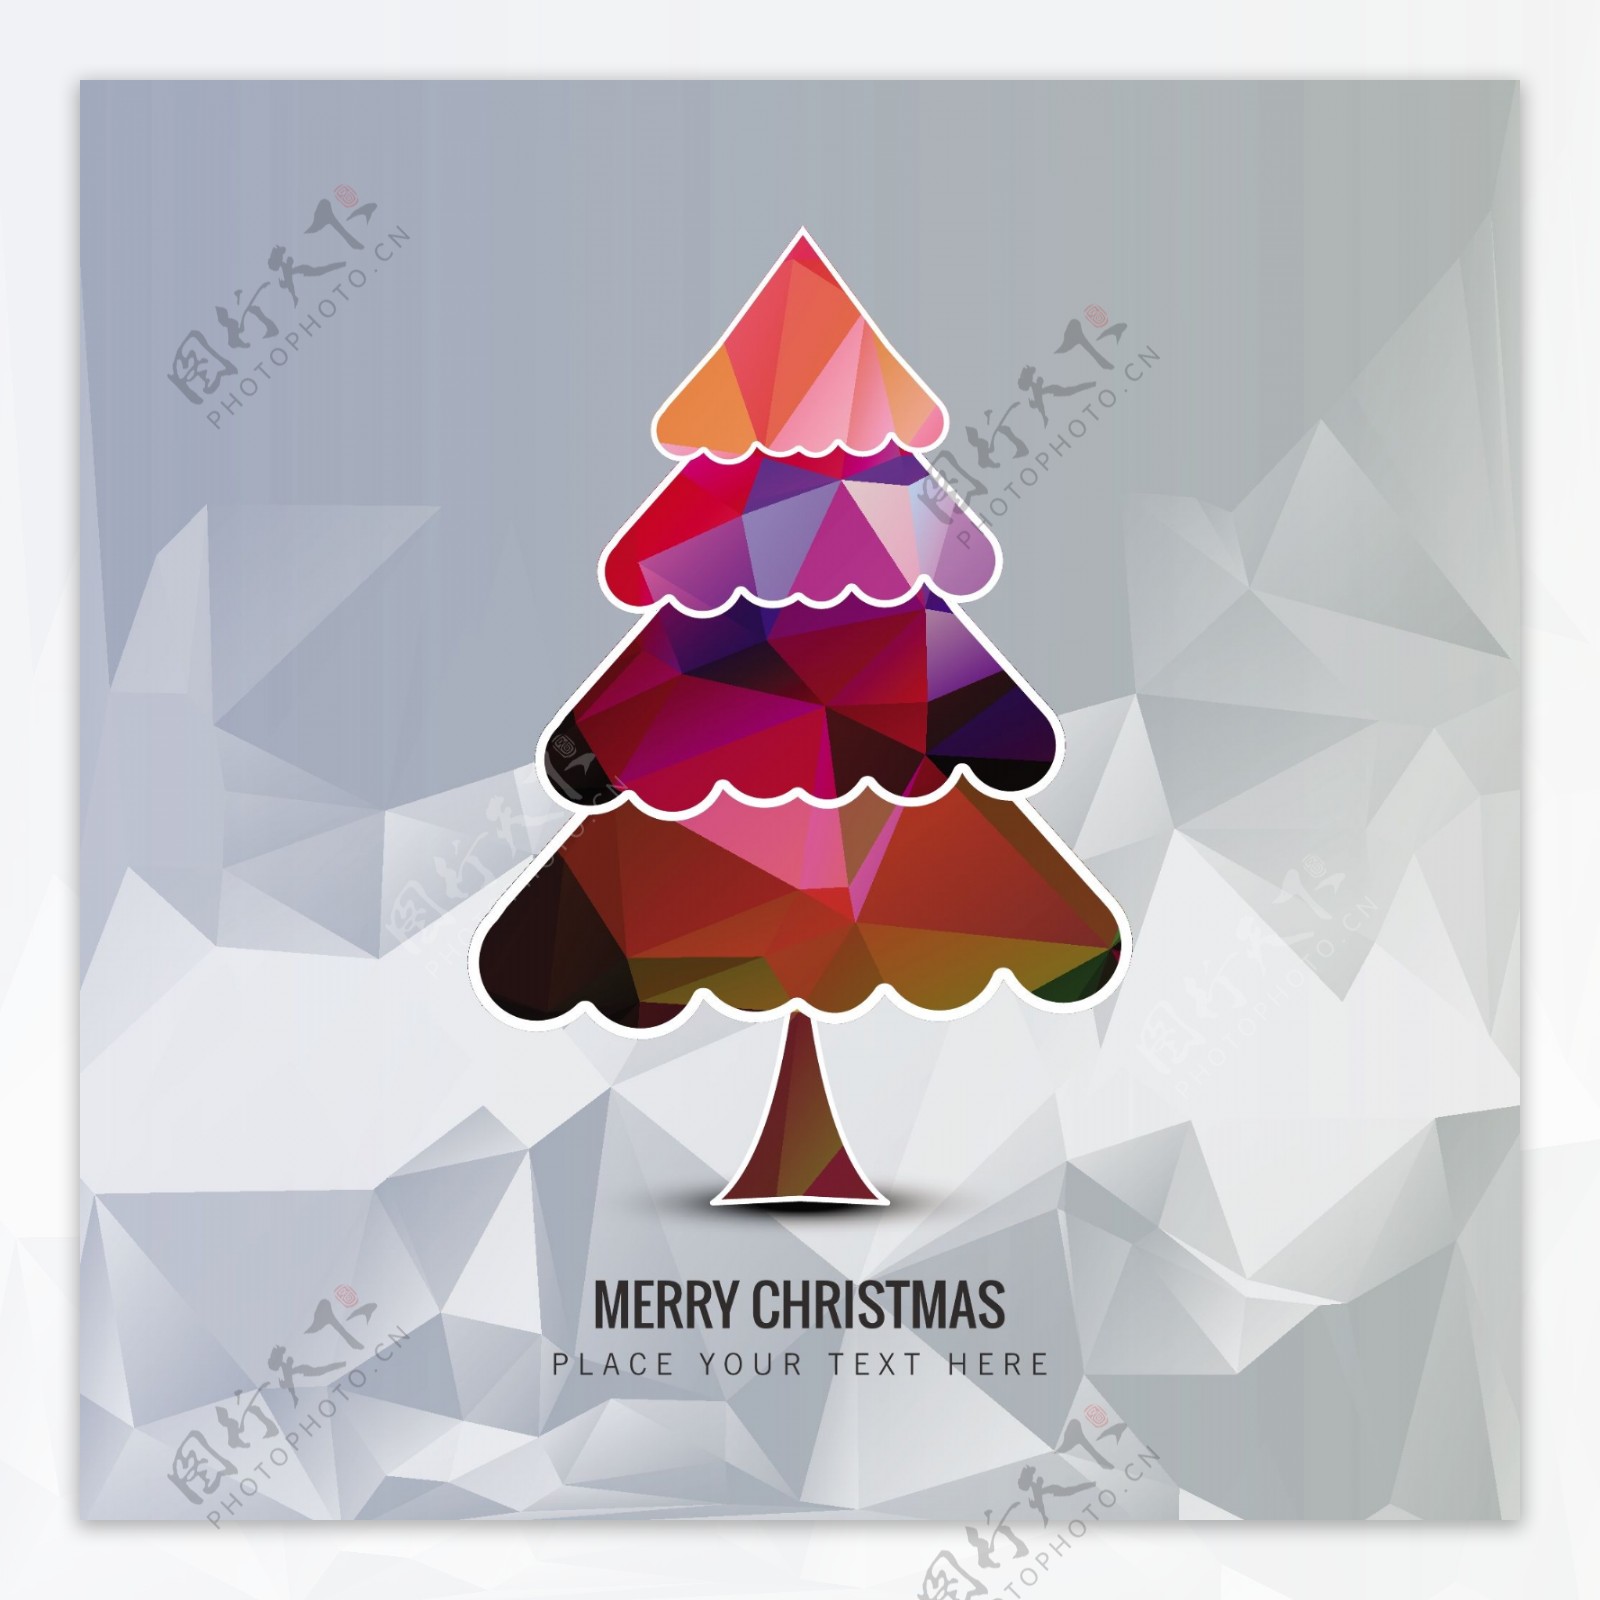 多边形风格的彩色圣诞树背景